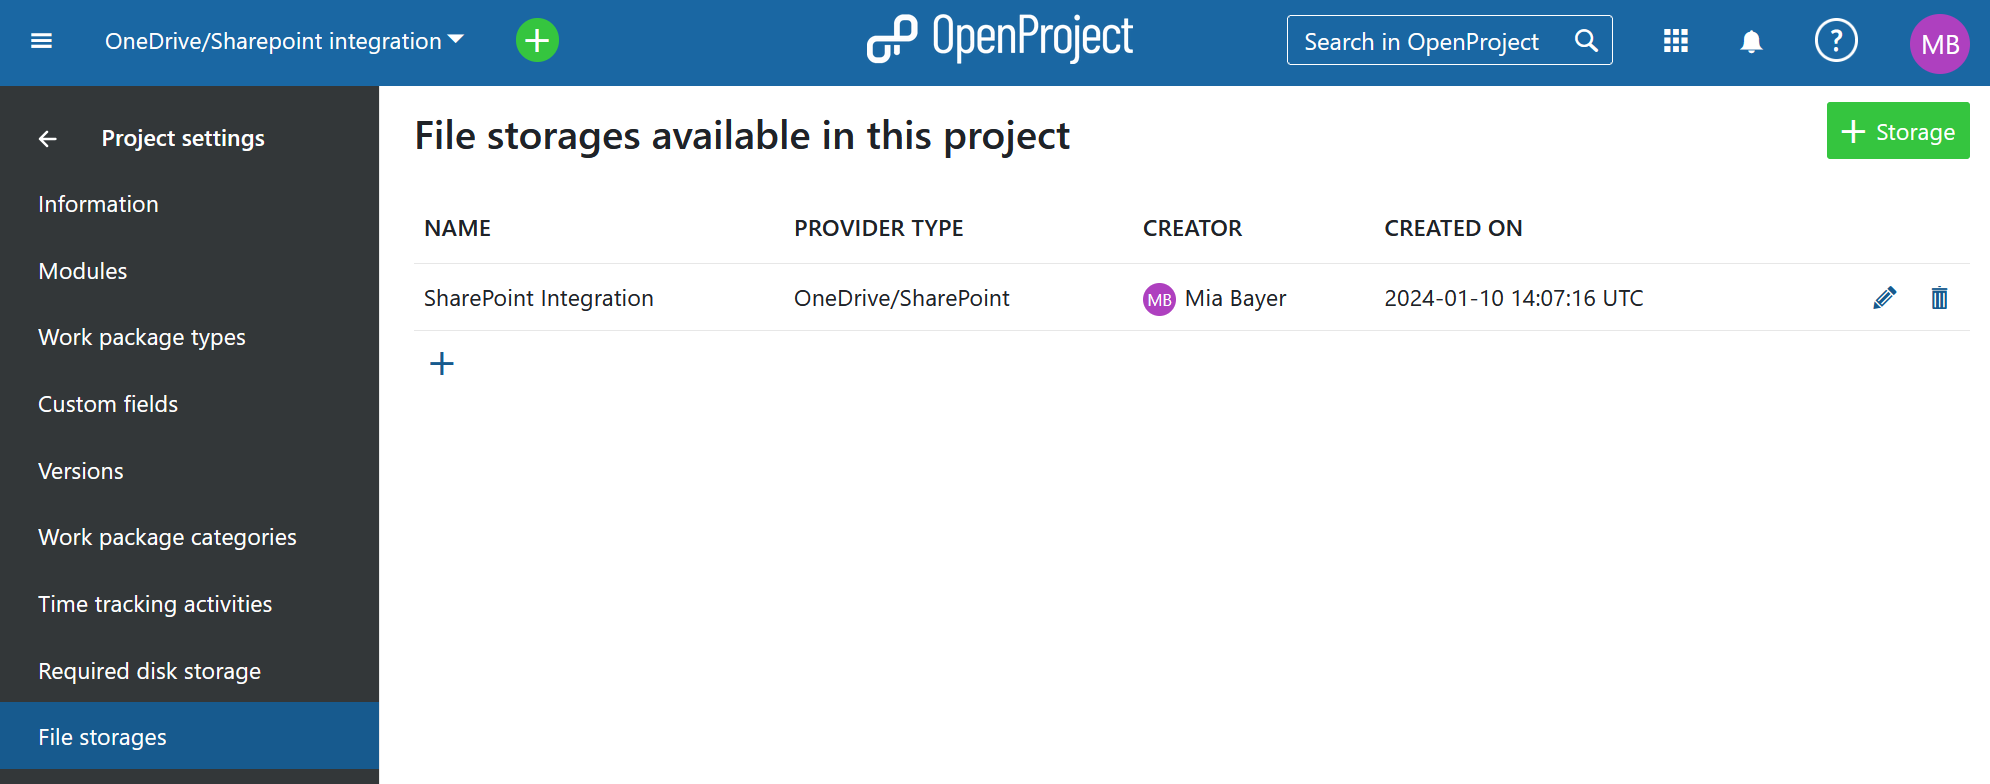 SharePoint/OneDrive Dateispeicher wird zu einem OpenProject Projekt hinzugefügt